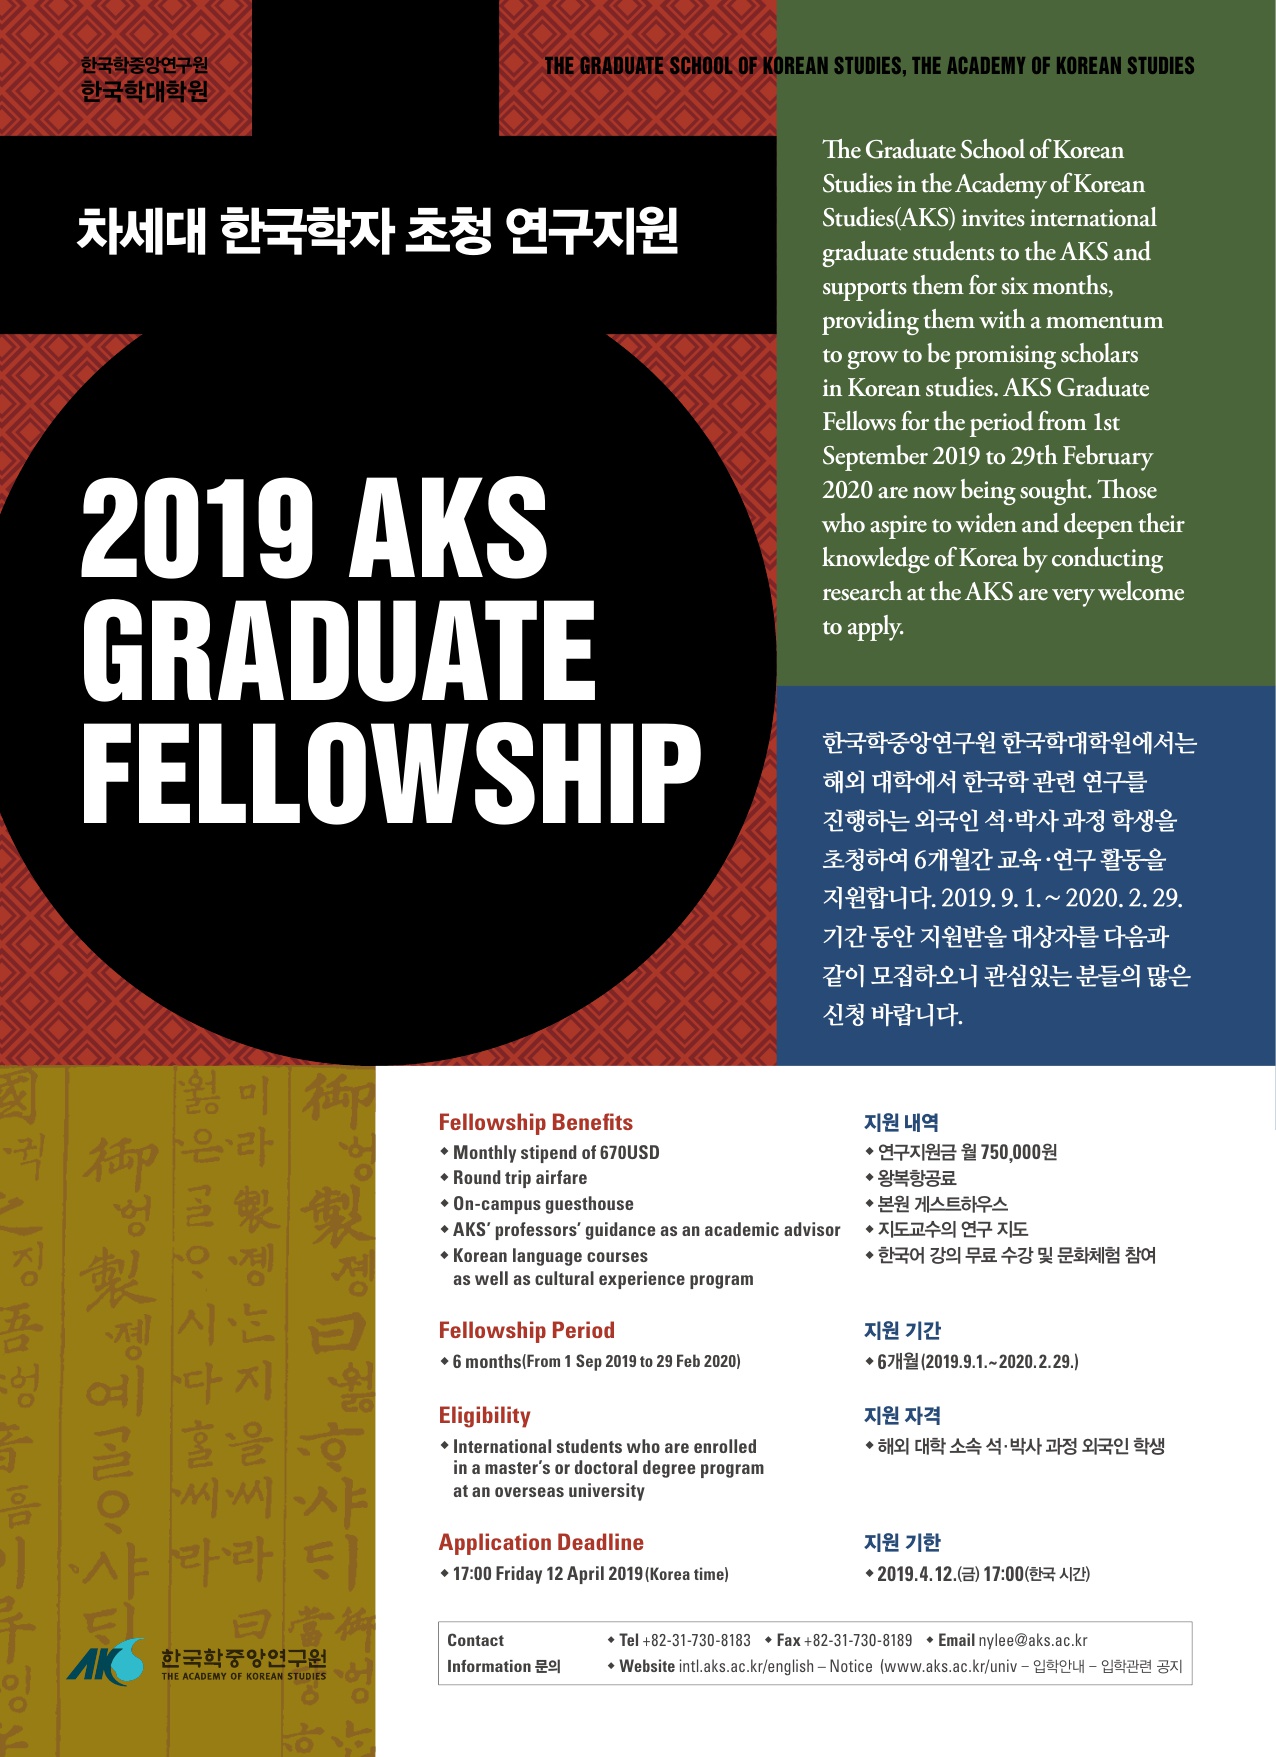 [붙임]붙임 1. 포스터_AKS Graduate Fellowship.jpg